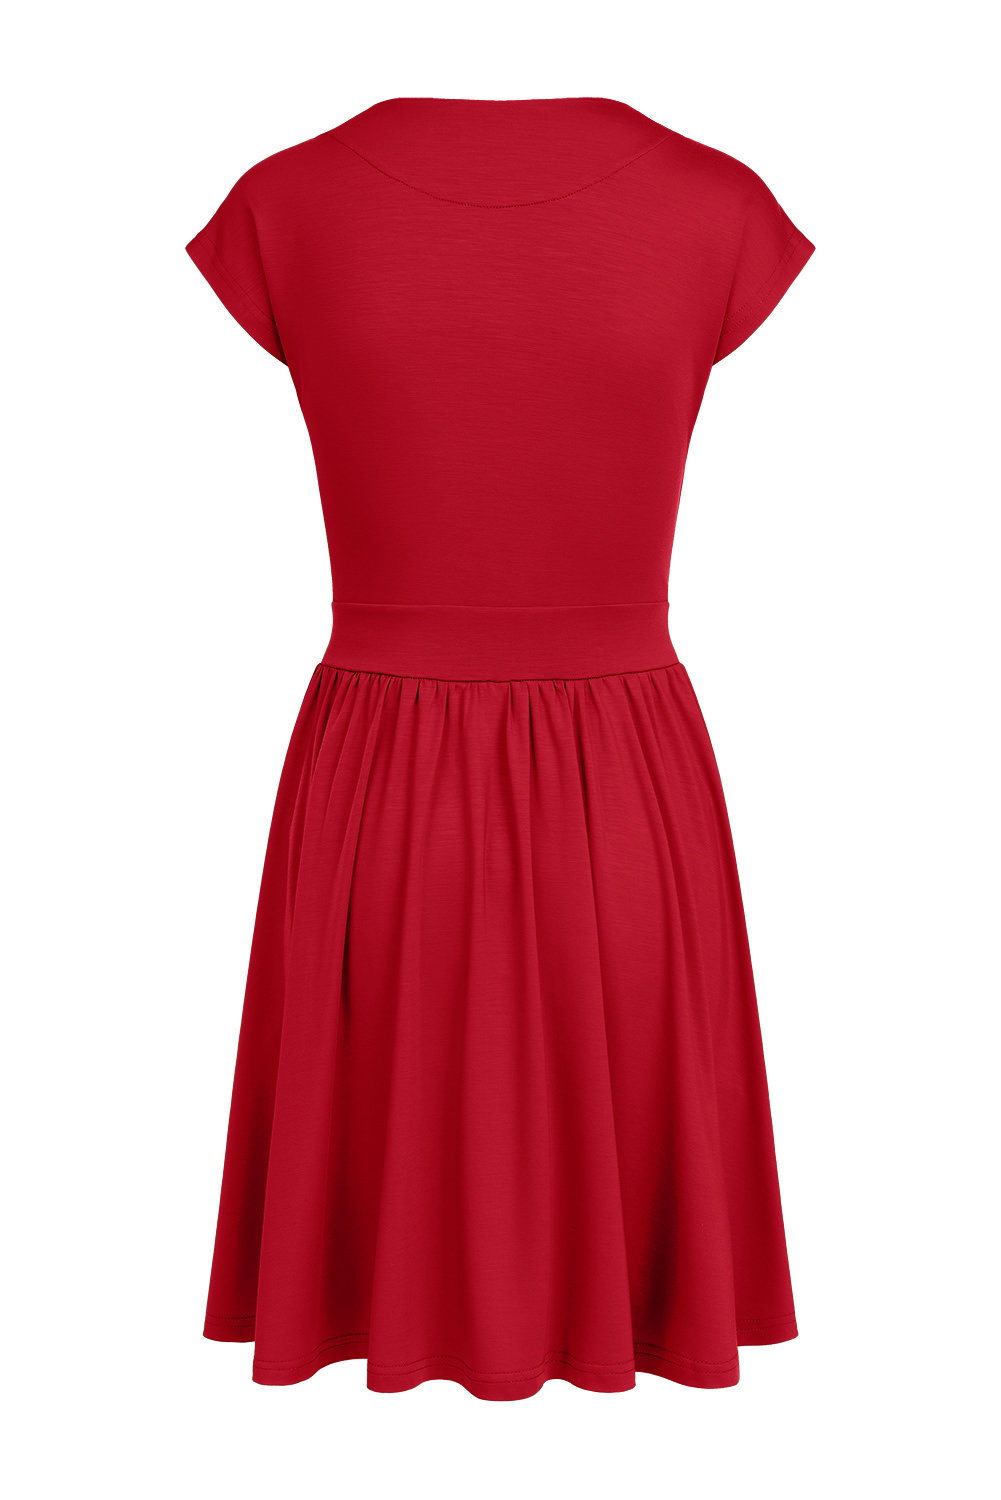 Kate Mini - czerwona sukienka z krótkim rękawem i kieszeniami Jester Red